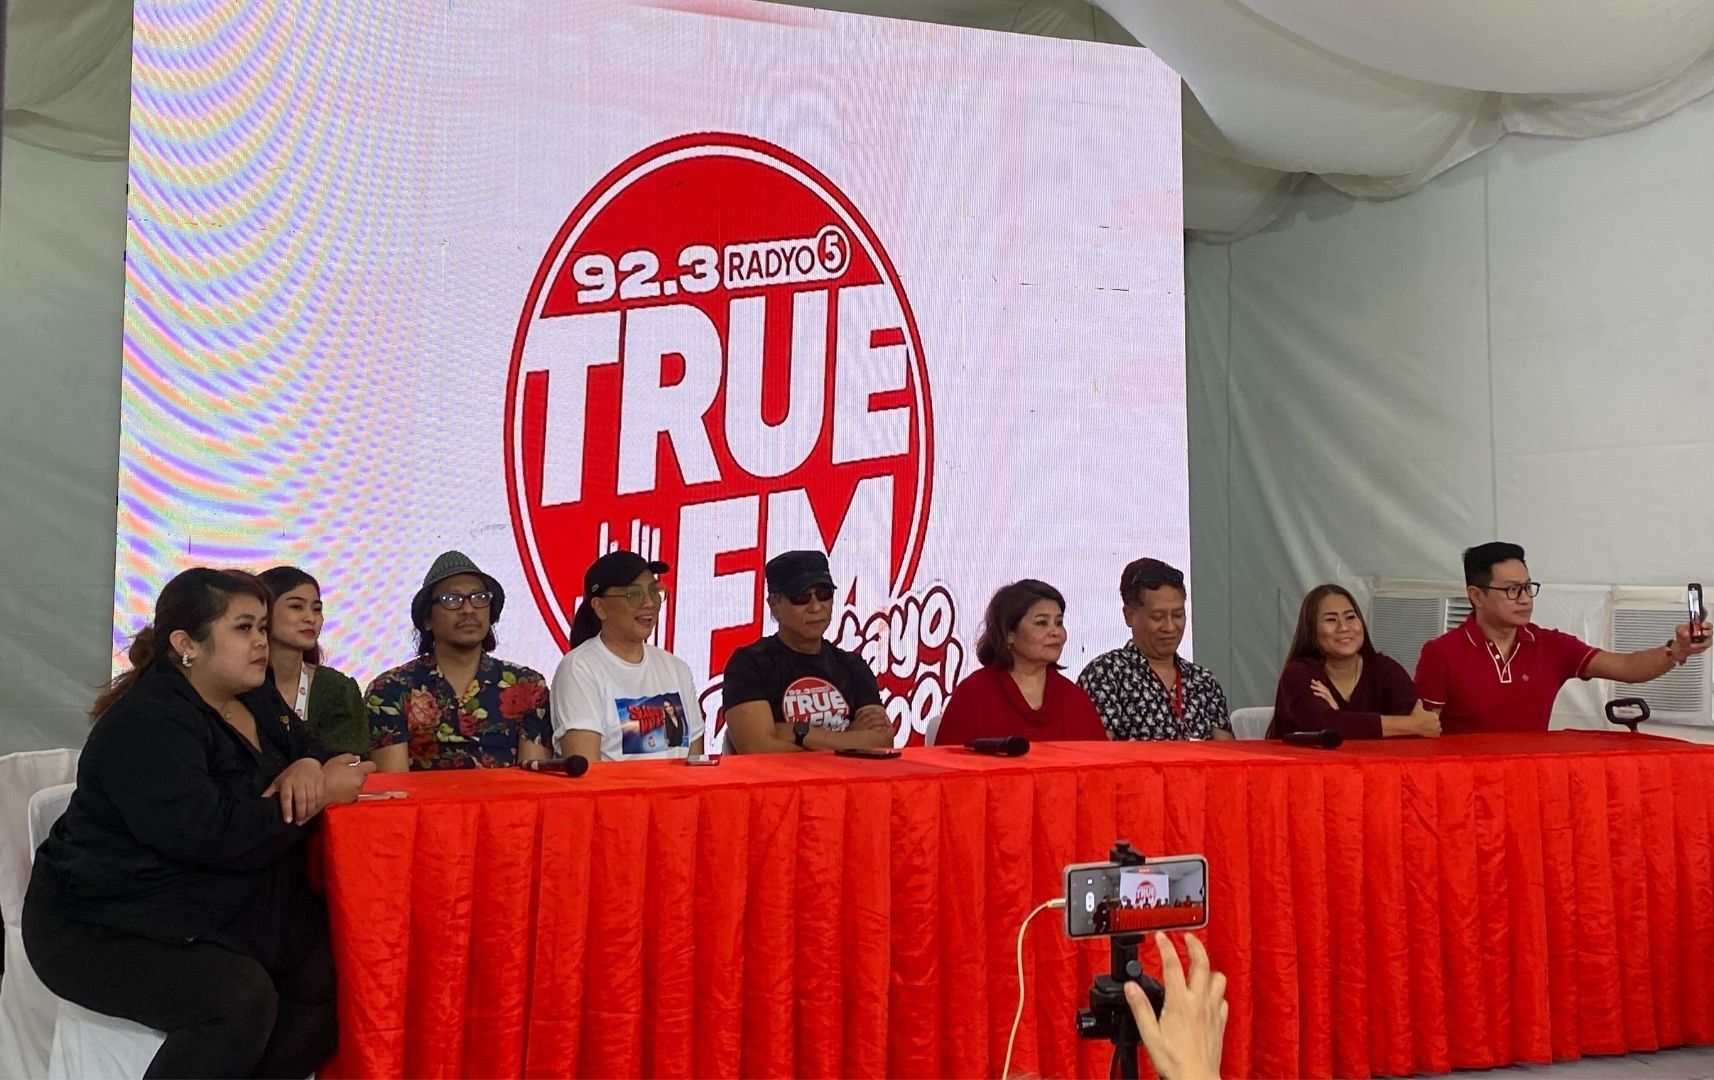 Radyo5 rebrands as 92.3 Radyo5 TRUE FM